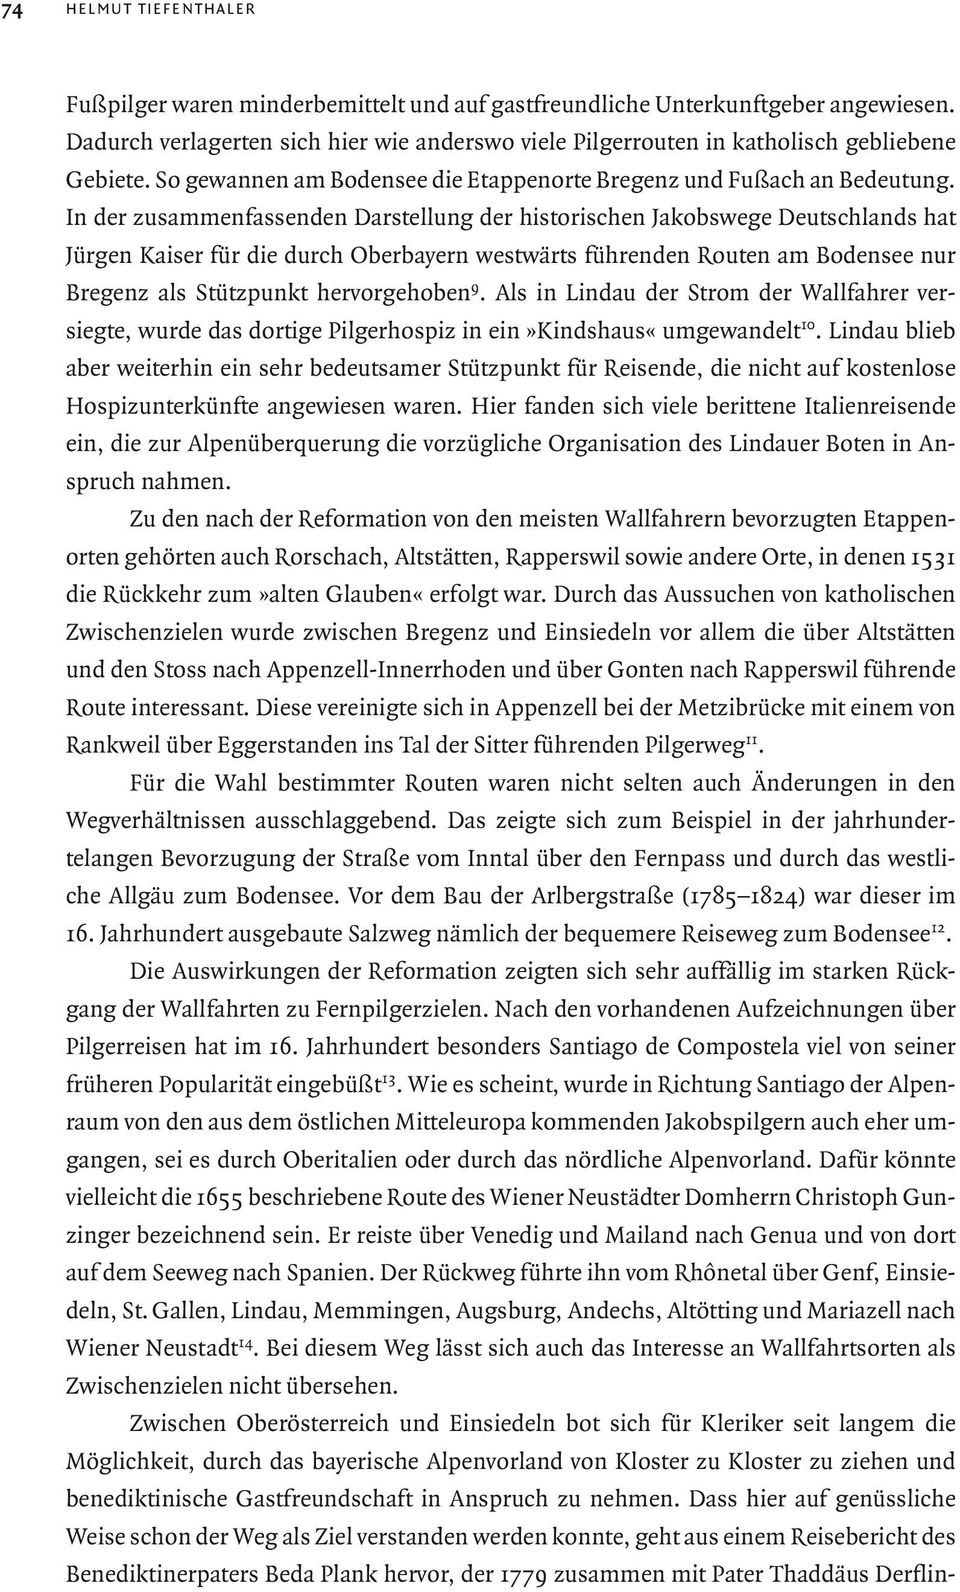 In der zusammenfassenden Darstellung der historischen Jakobswege Deutschlands hat Jürgen Kaiser für die durch Oberbayern westwärts führenden Routen am Bodensee nur Bregenz als Stützpunkt